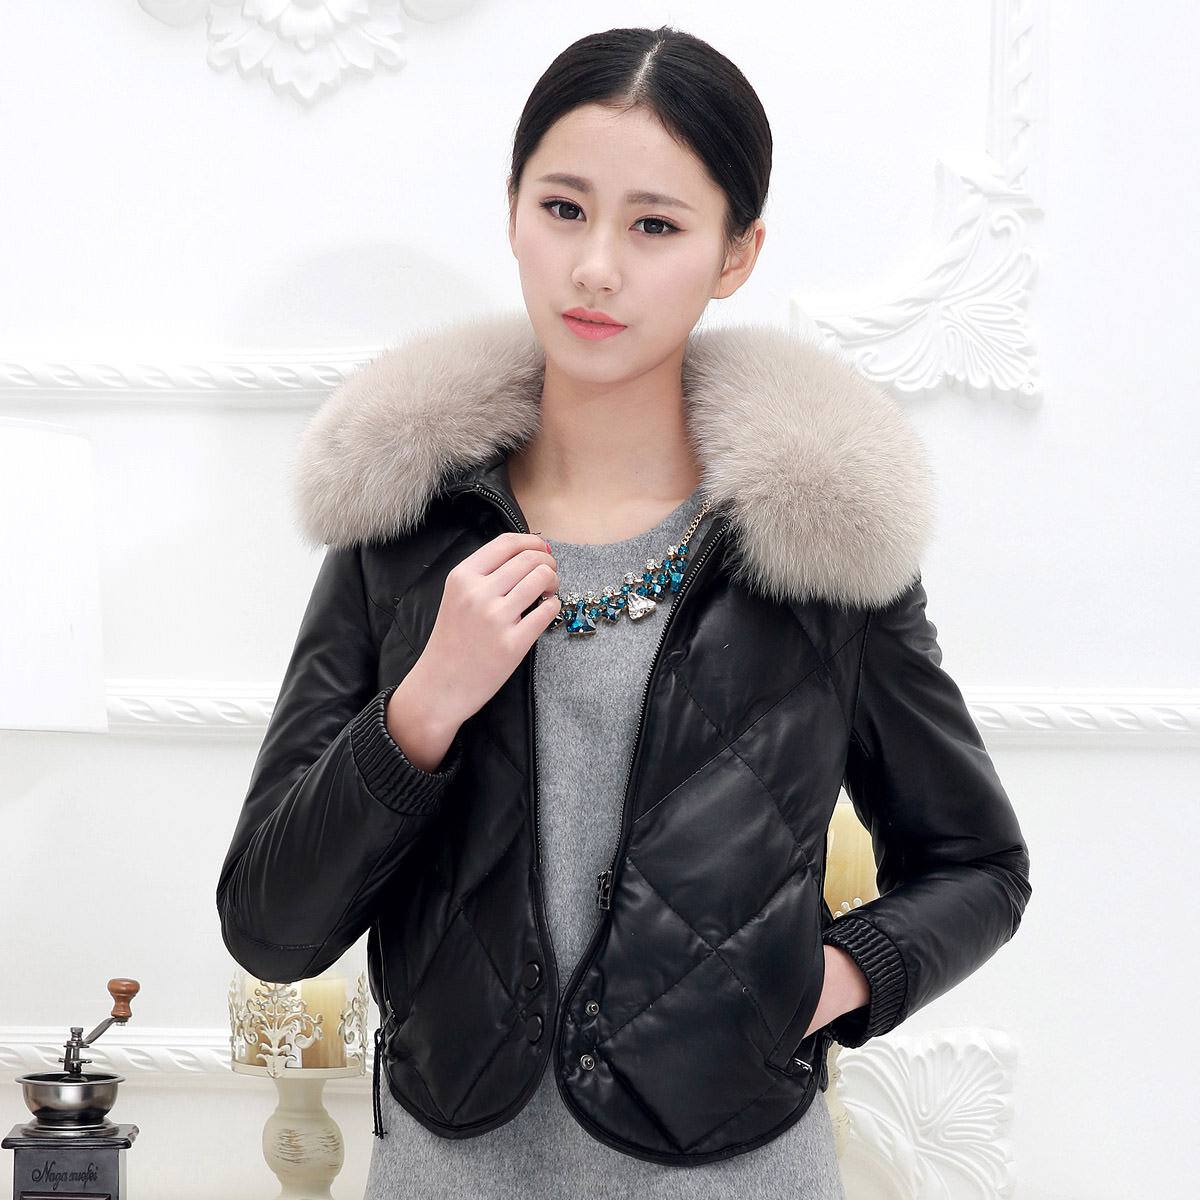 Распродажа женских кожаных курток в Москве, цены: купить кожаную куртку со скидкой для женщины